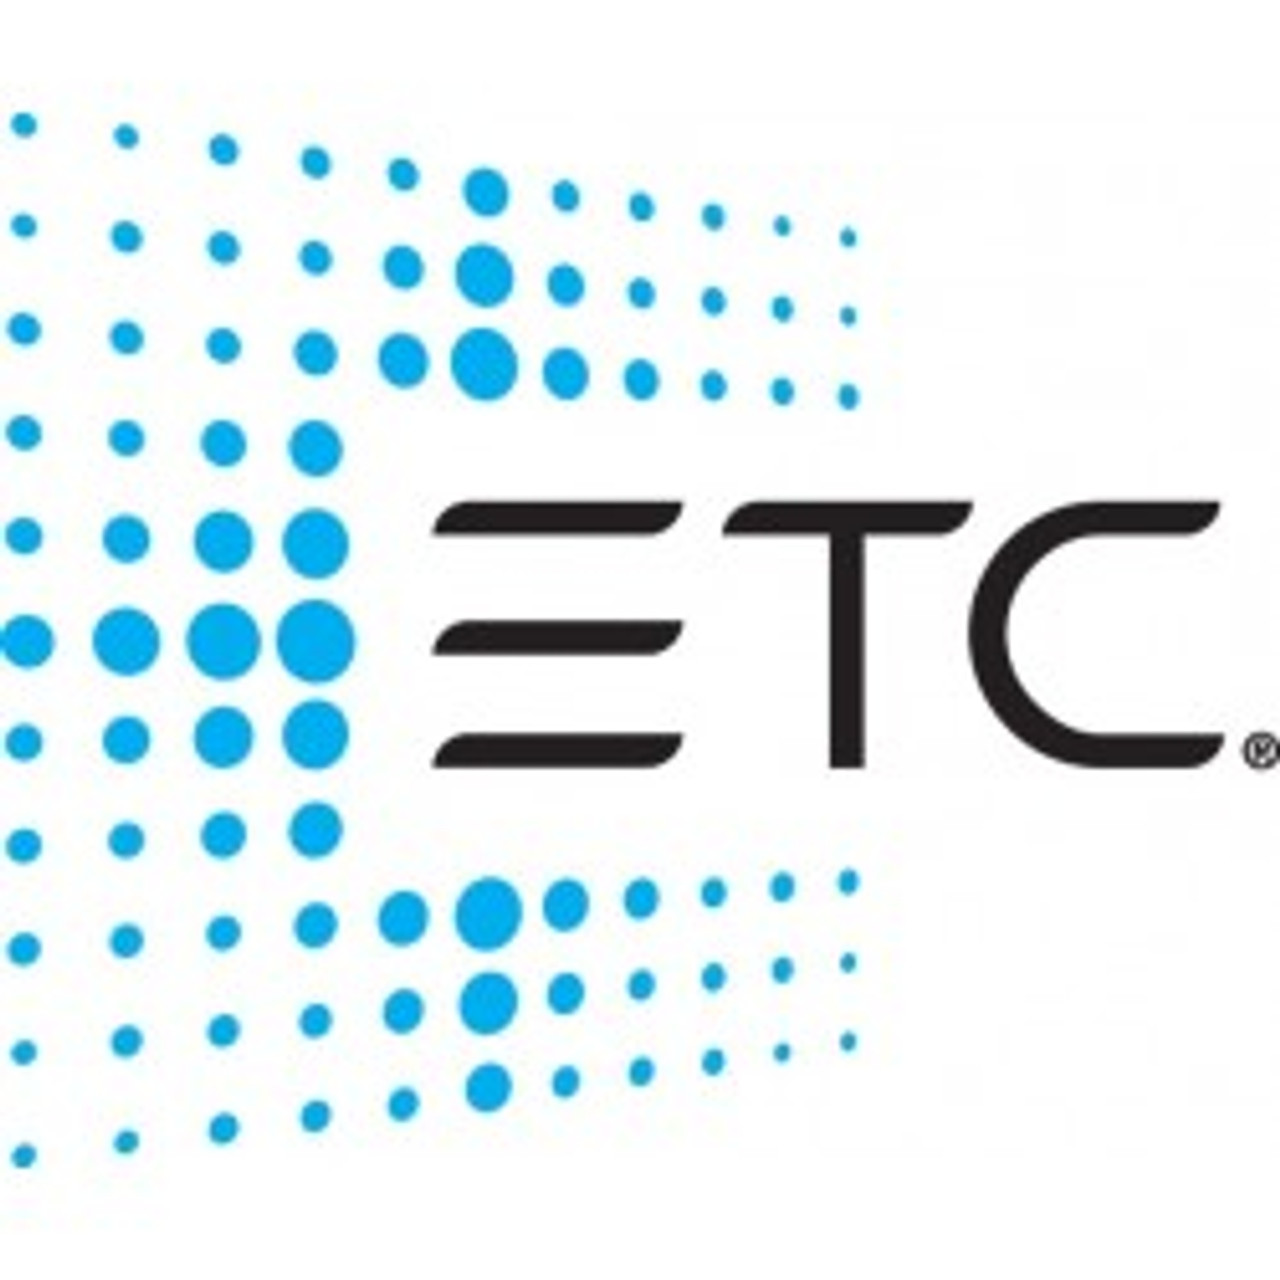 ETC Analog Address System